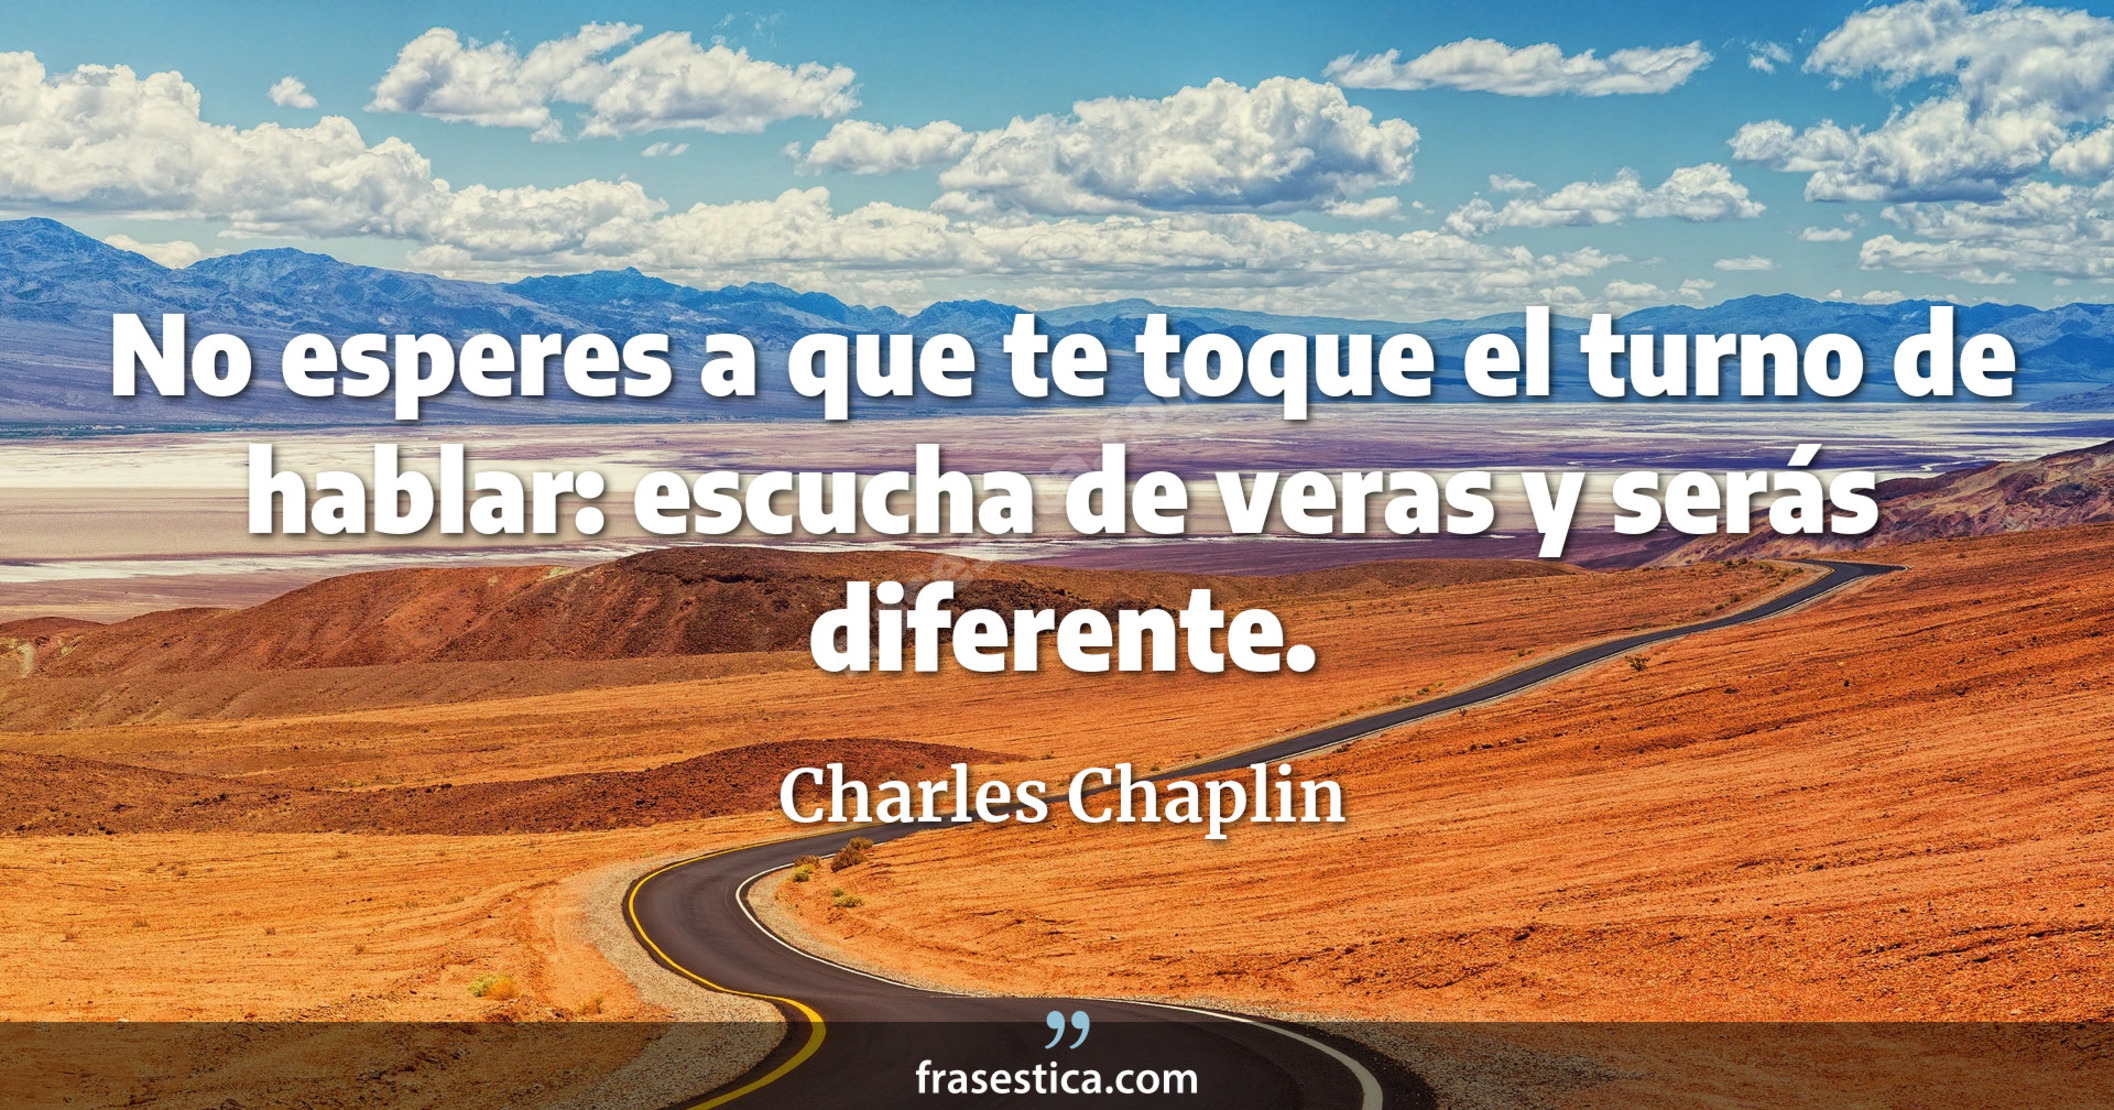 No esperes a que te toque el turno de hablar: escucha de veras y serás diferente. - Charles Chaplin